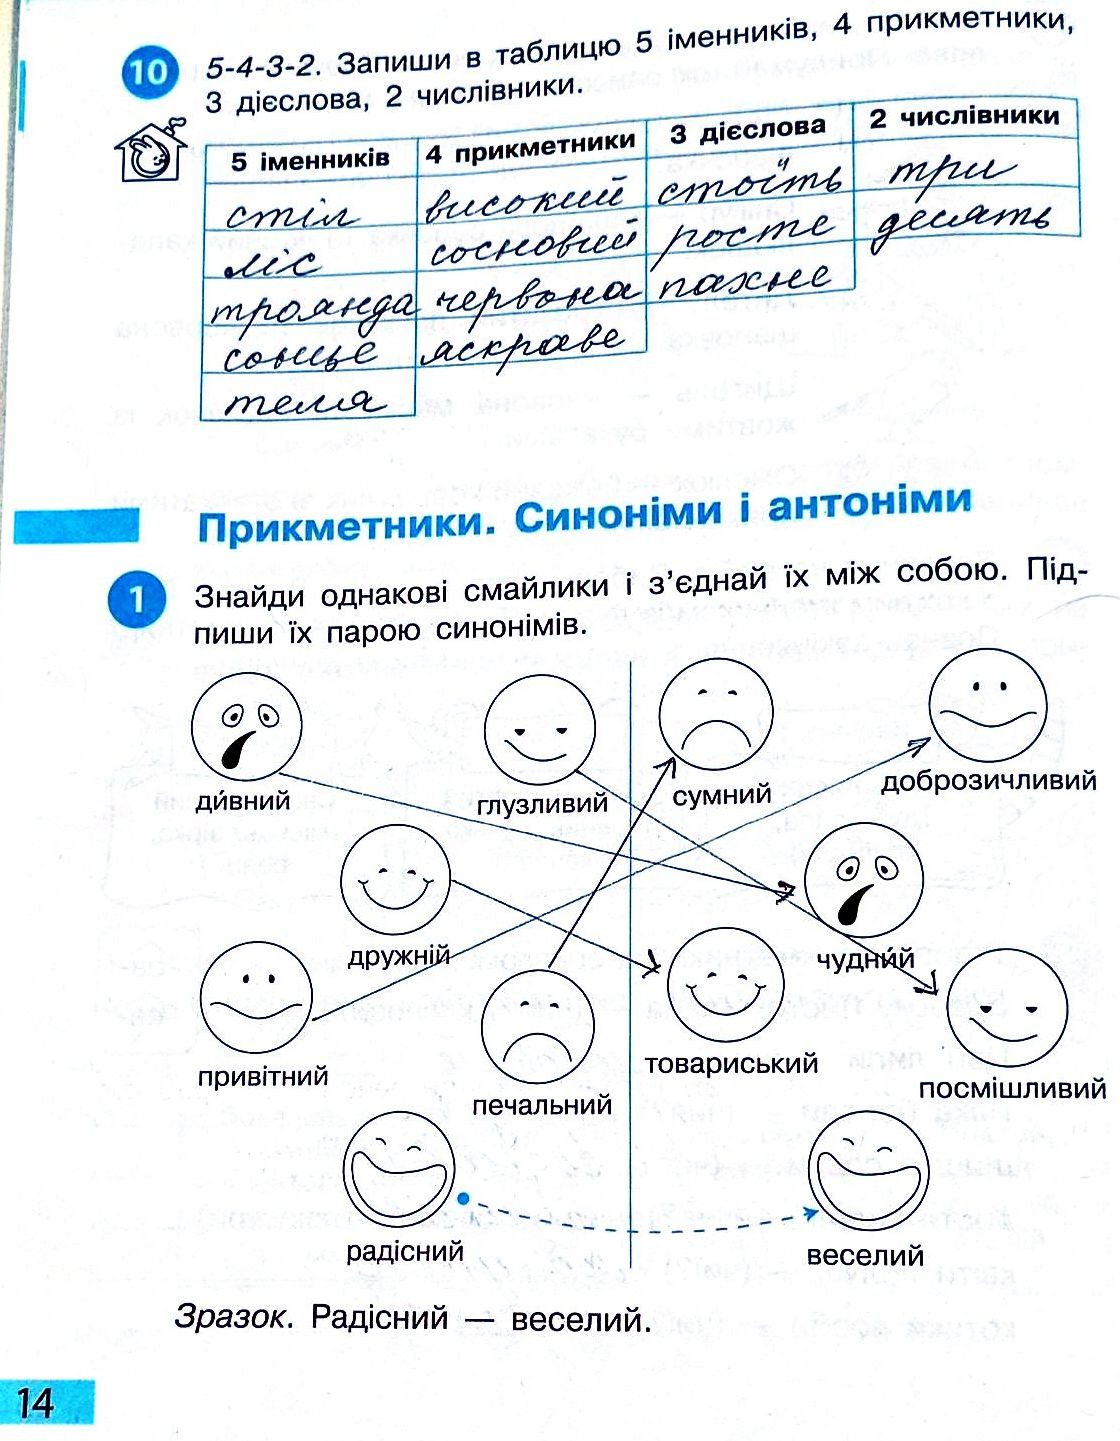 Сторінка 14 частина 2 гдз 3 клас робочий зошит українська мова Большакова